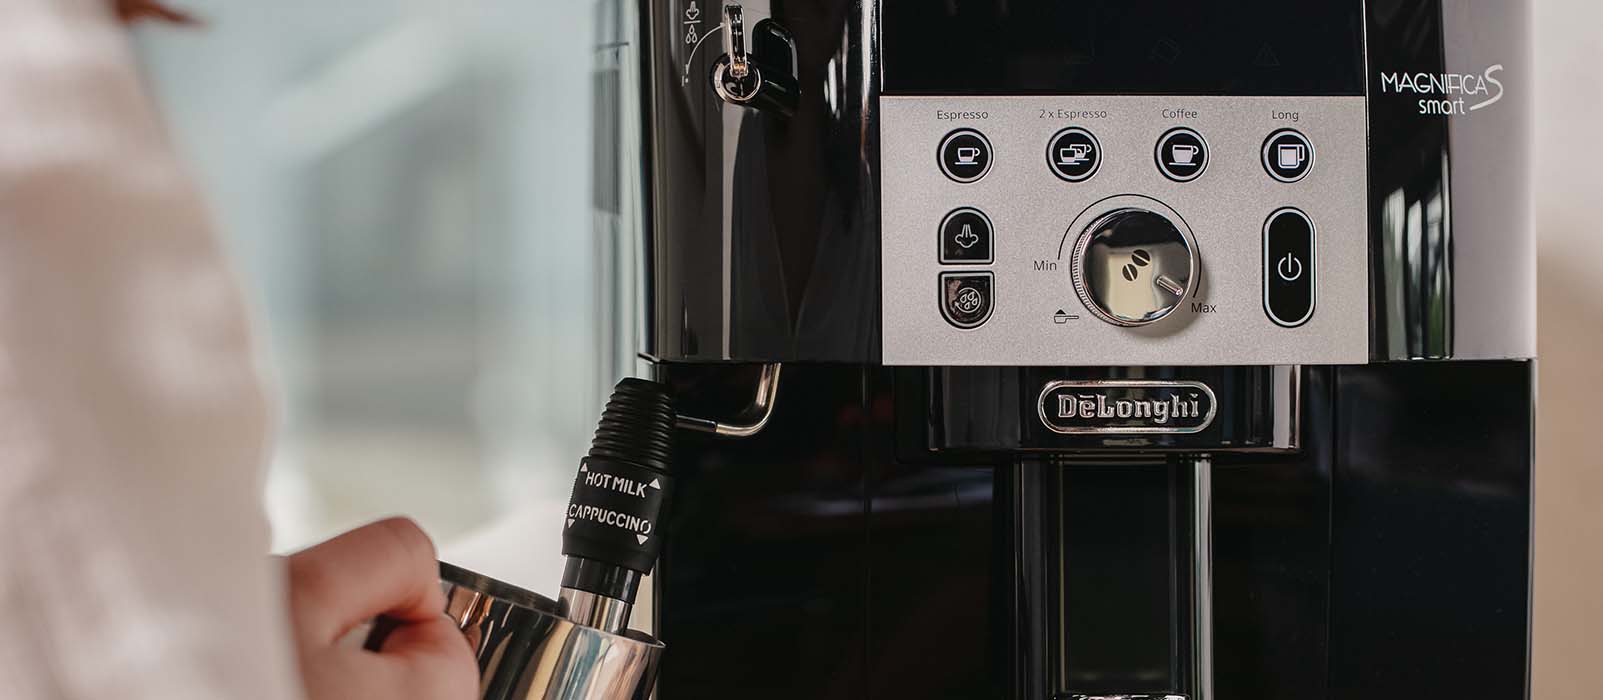 Comment détartrer la machine à café Magnifica S Smart 